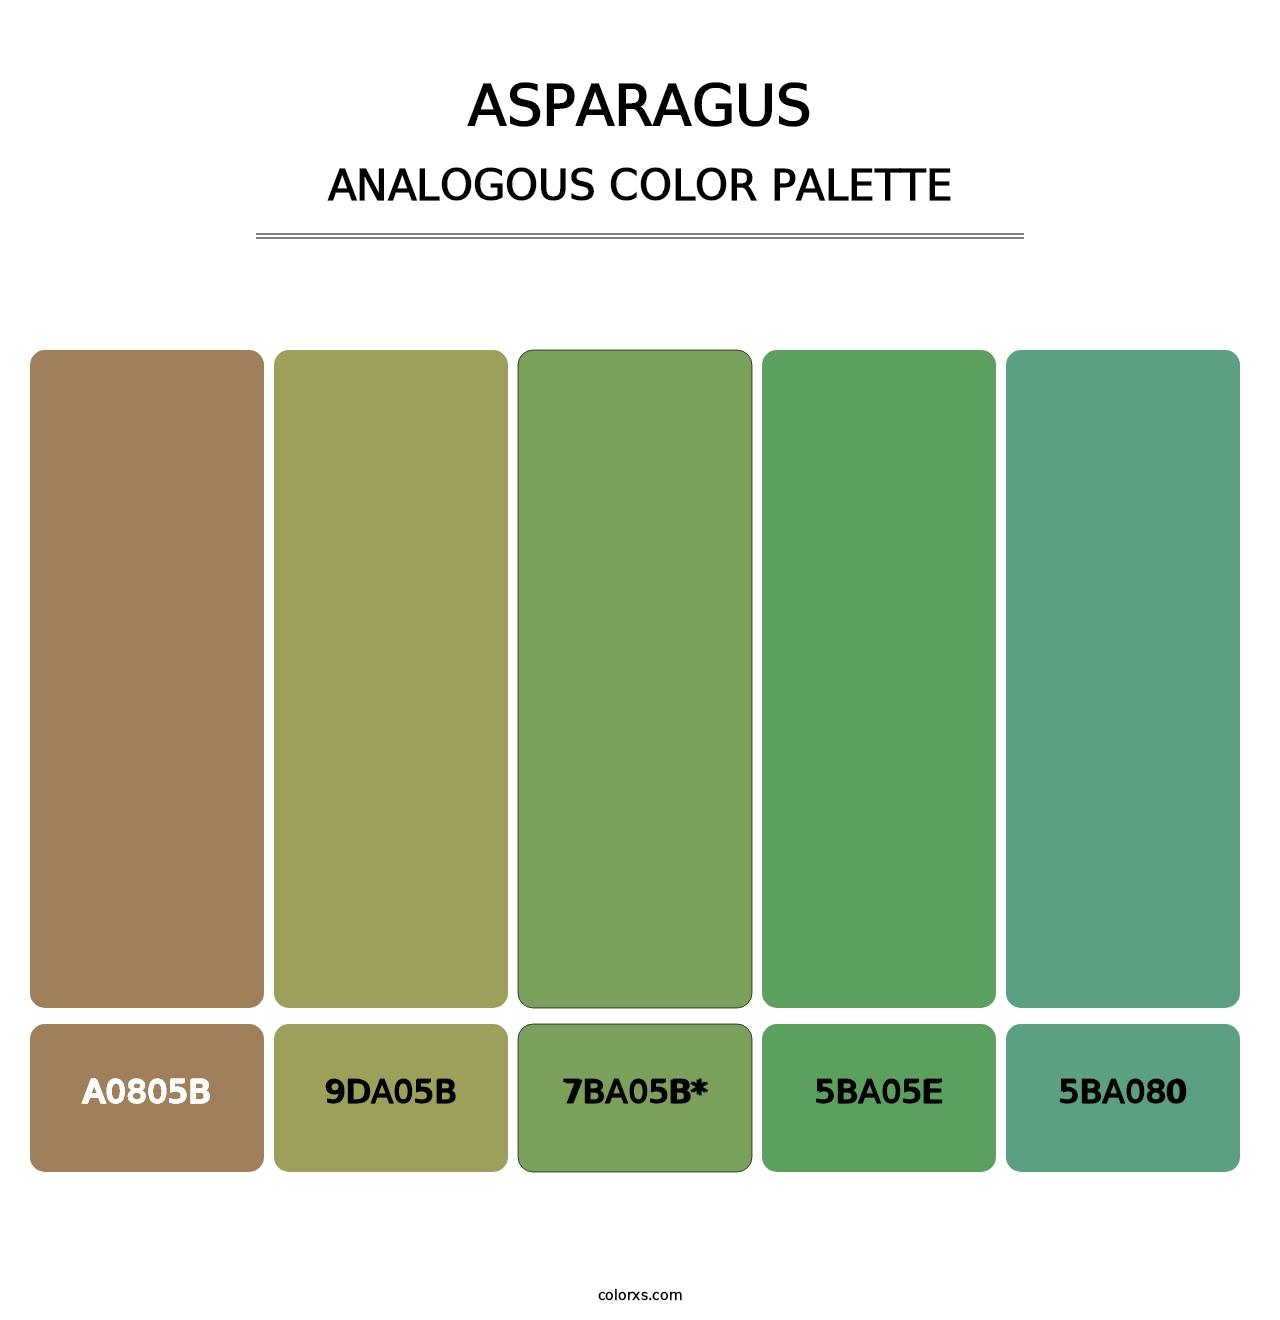 Asparagus - Analogous Color Palette